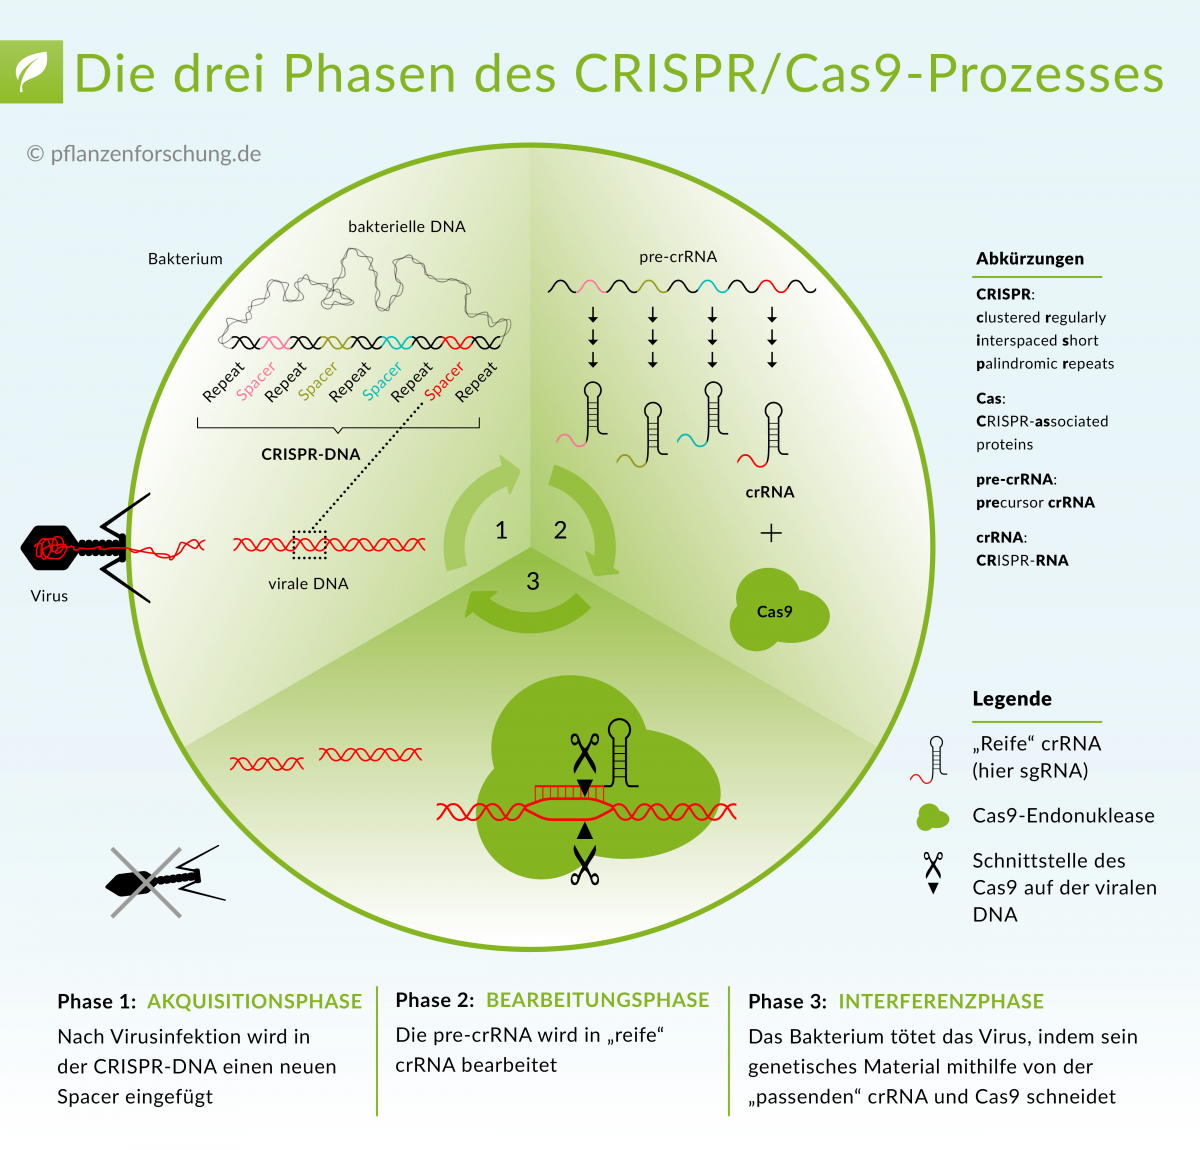 CRISP/Cas 9: Lesen Sie mehr darüber, wie diese neue Technologie auf molekularer Ebene funktioniert: "Wie CRISPR/Cas funktioniert"
